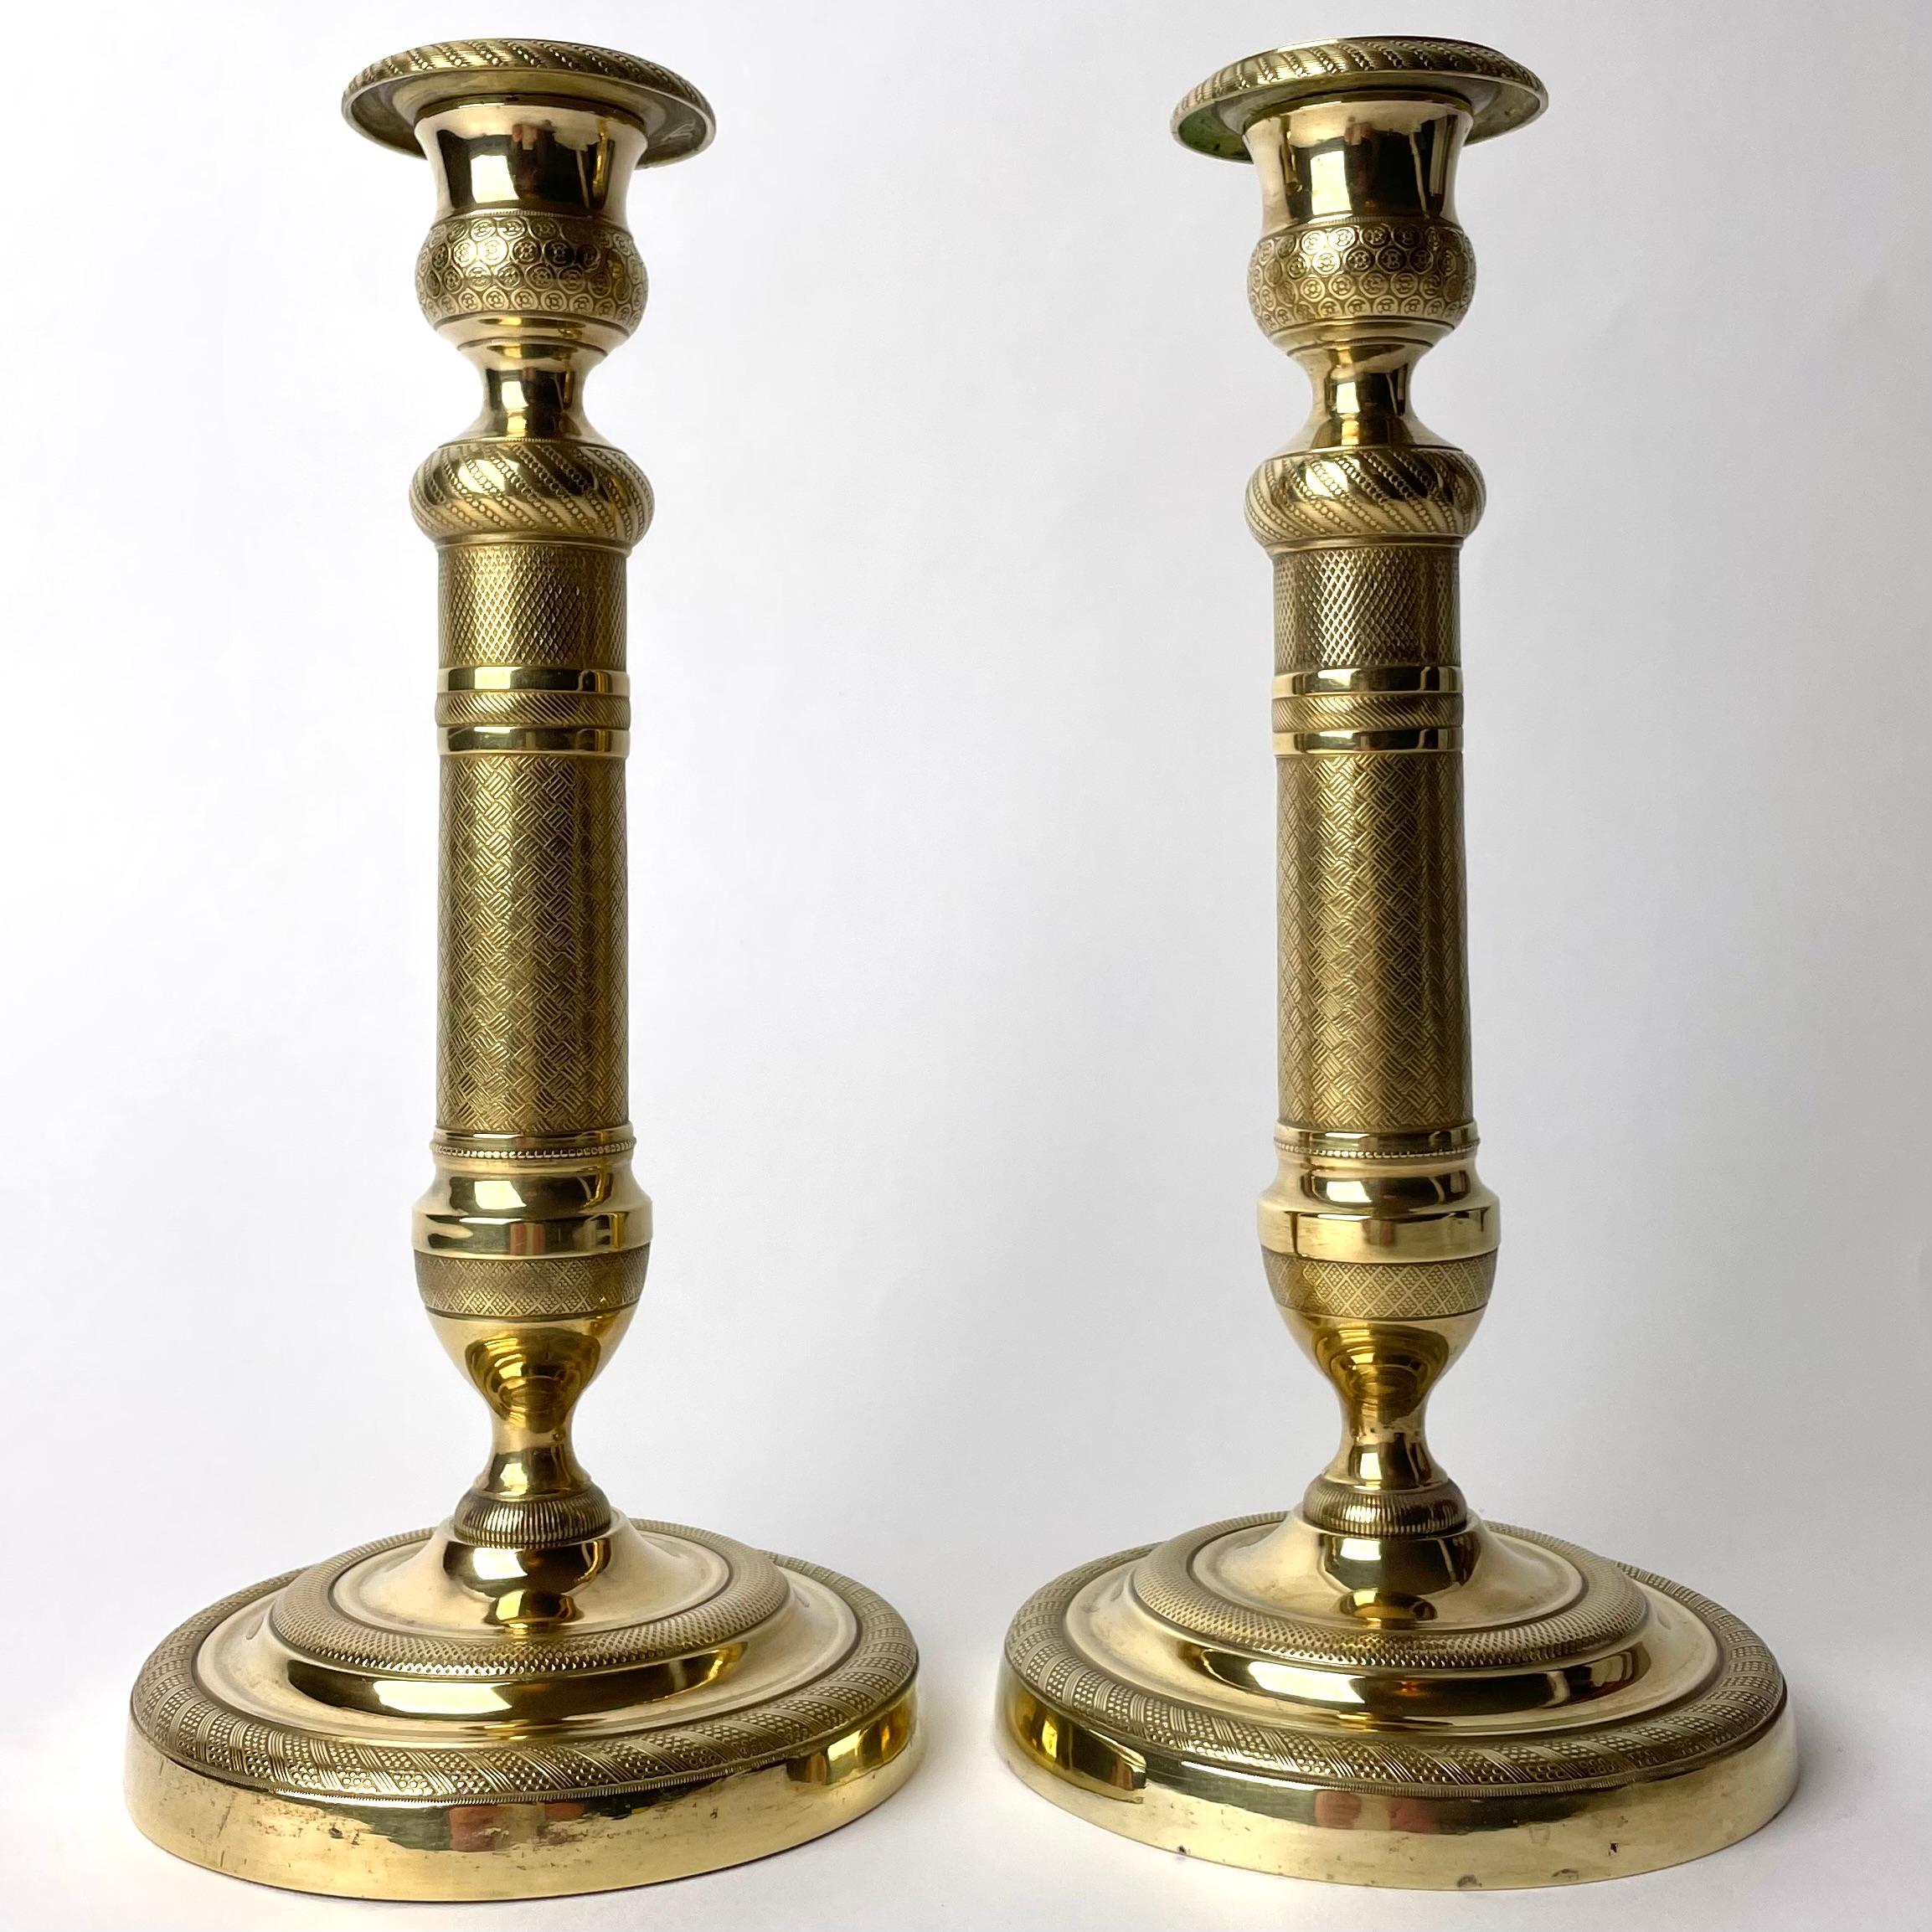 Elegante paire de chandeliers Empire en bronze doré. Fabriqué en France dans les années 1820. Richement décoré de motifs d'époque.

Usure correspondant à l'âge et à l'usage.